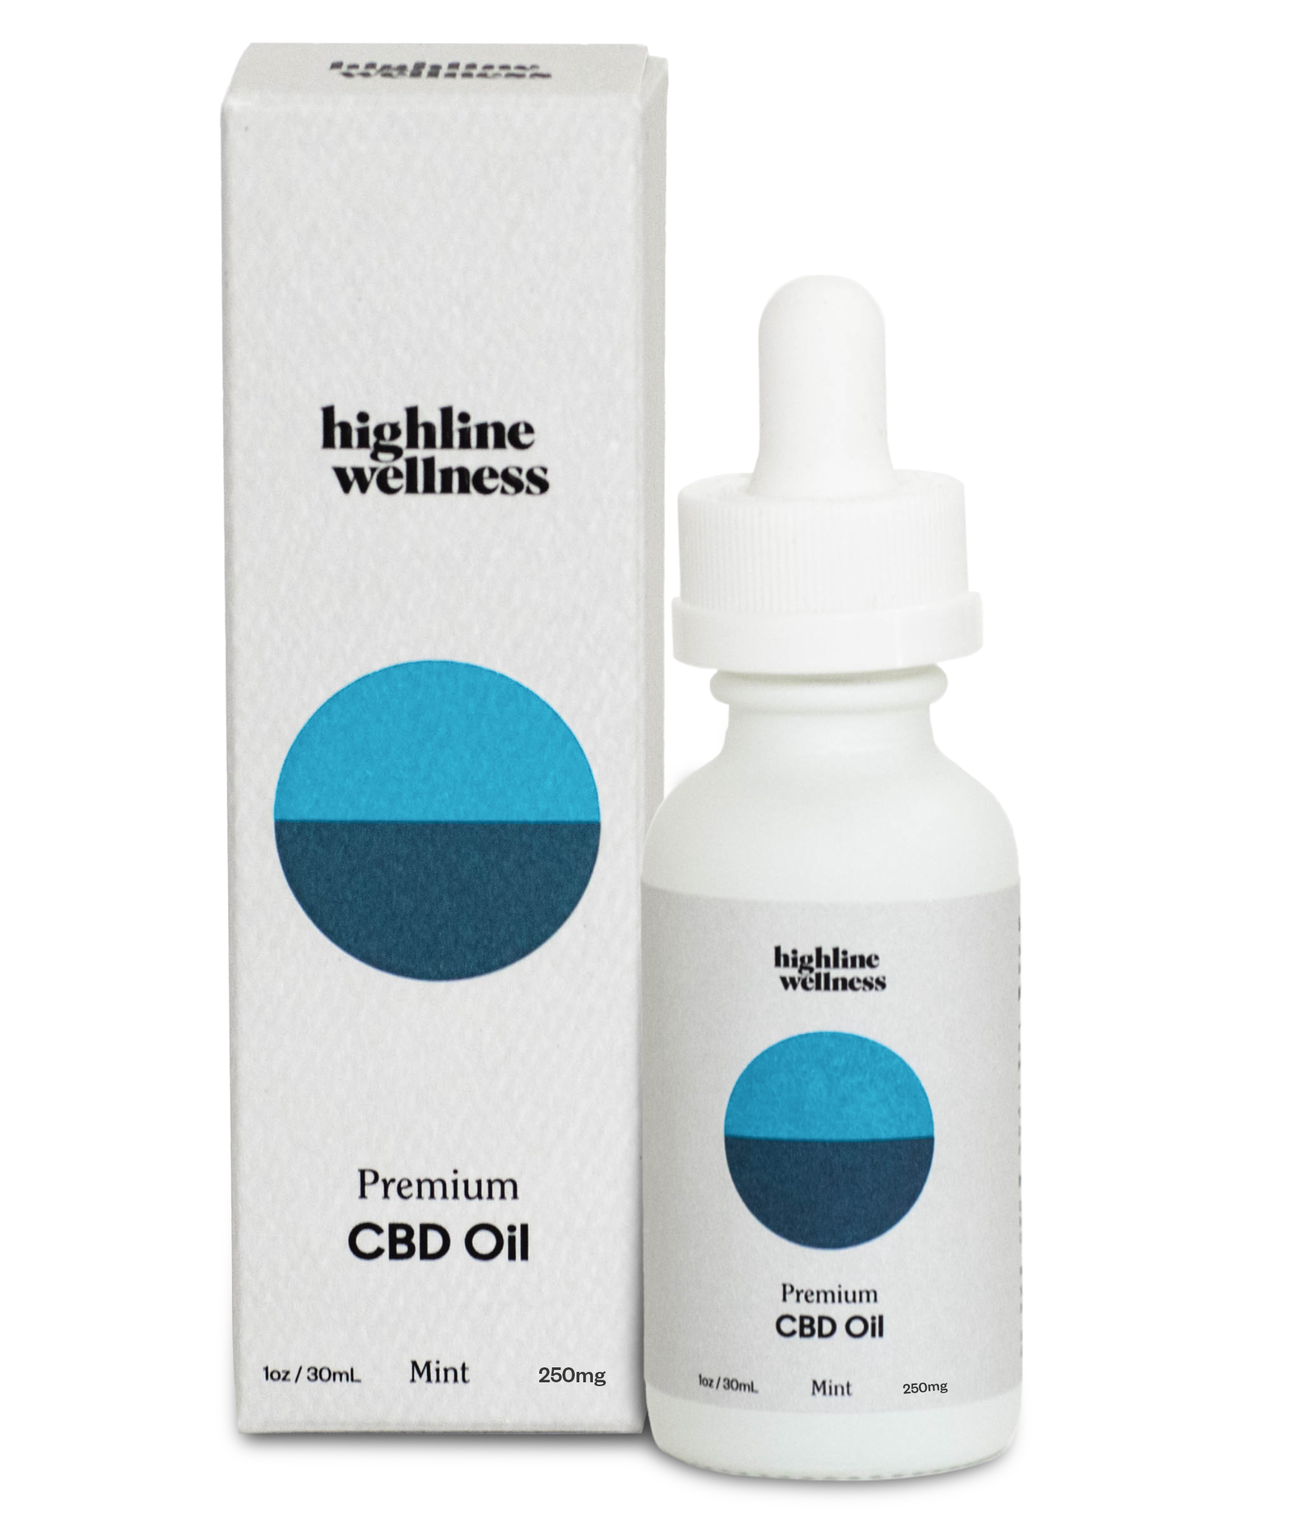 Highline Wellness CBD Oil